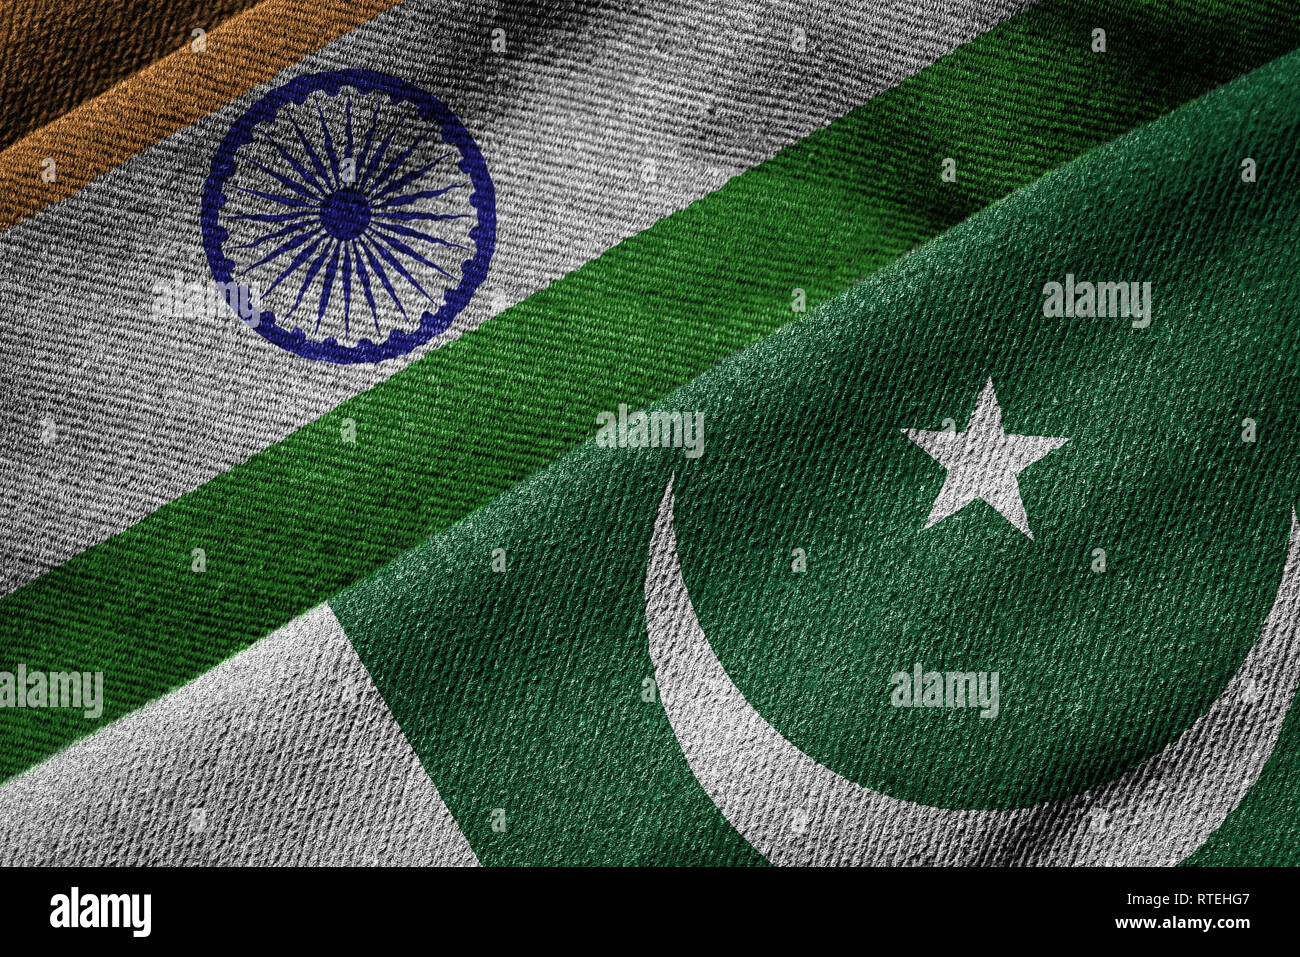 Le chevauchement des groupes grunge drapeaux de l'Inde et le Pakistan, en mettant en évidence les tensions et les conflits politiques en cours entre les deux pays voisins depuis 1 Banque D'Images